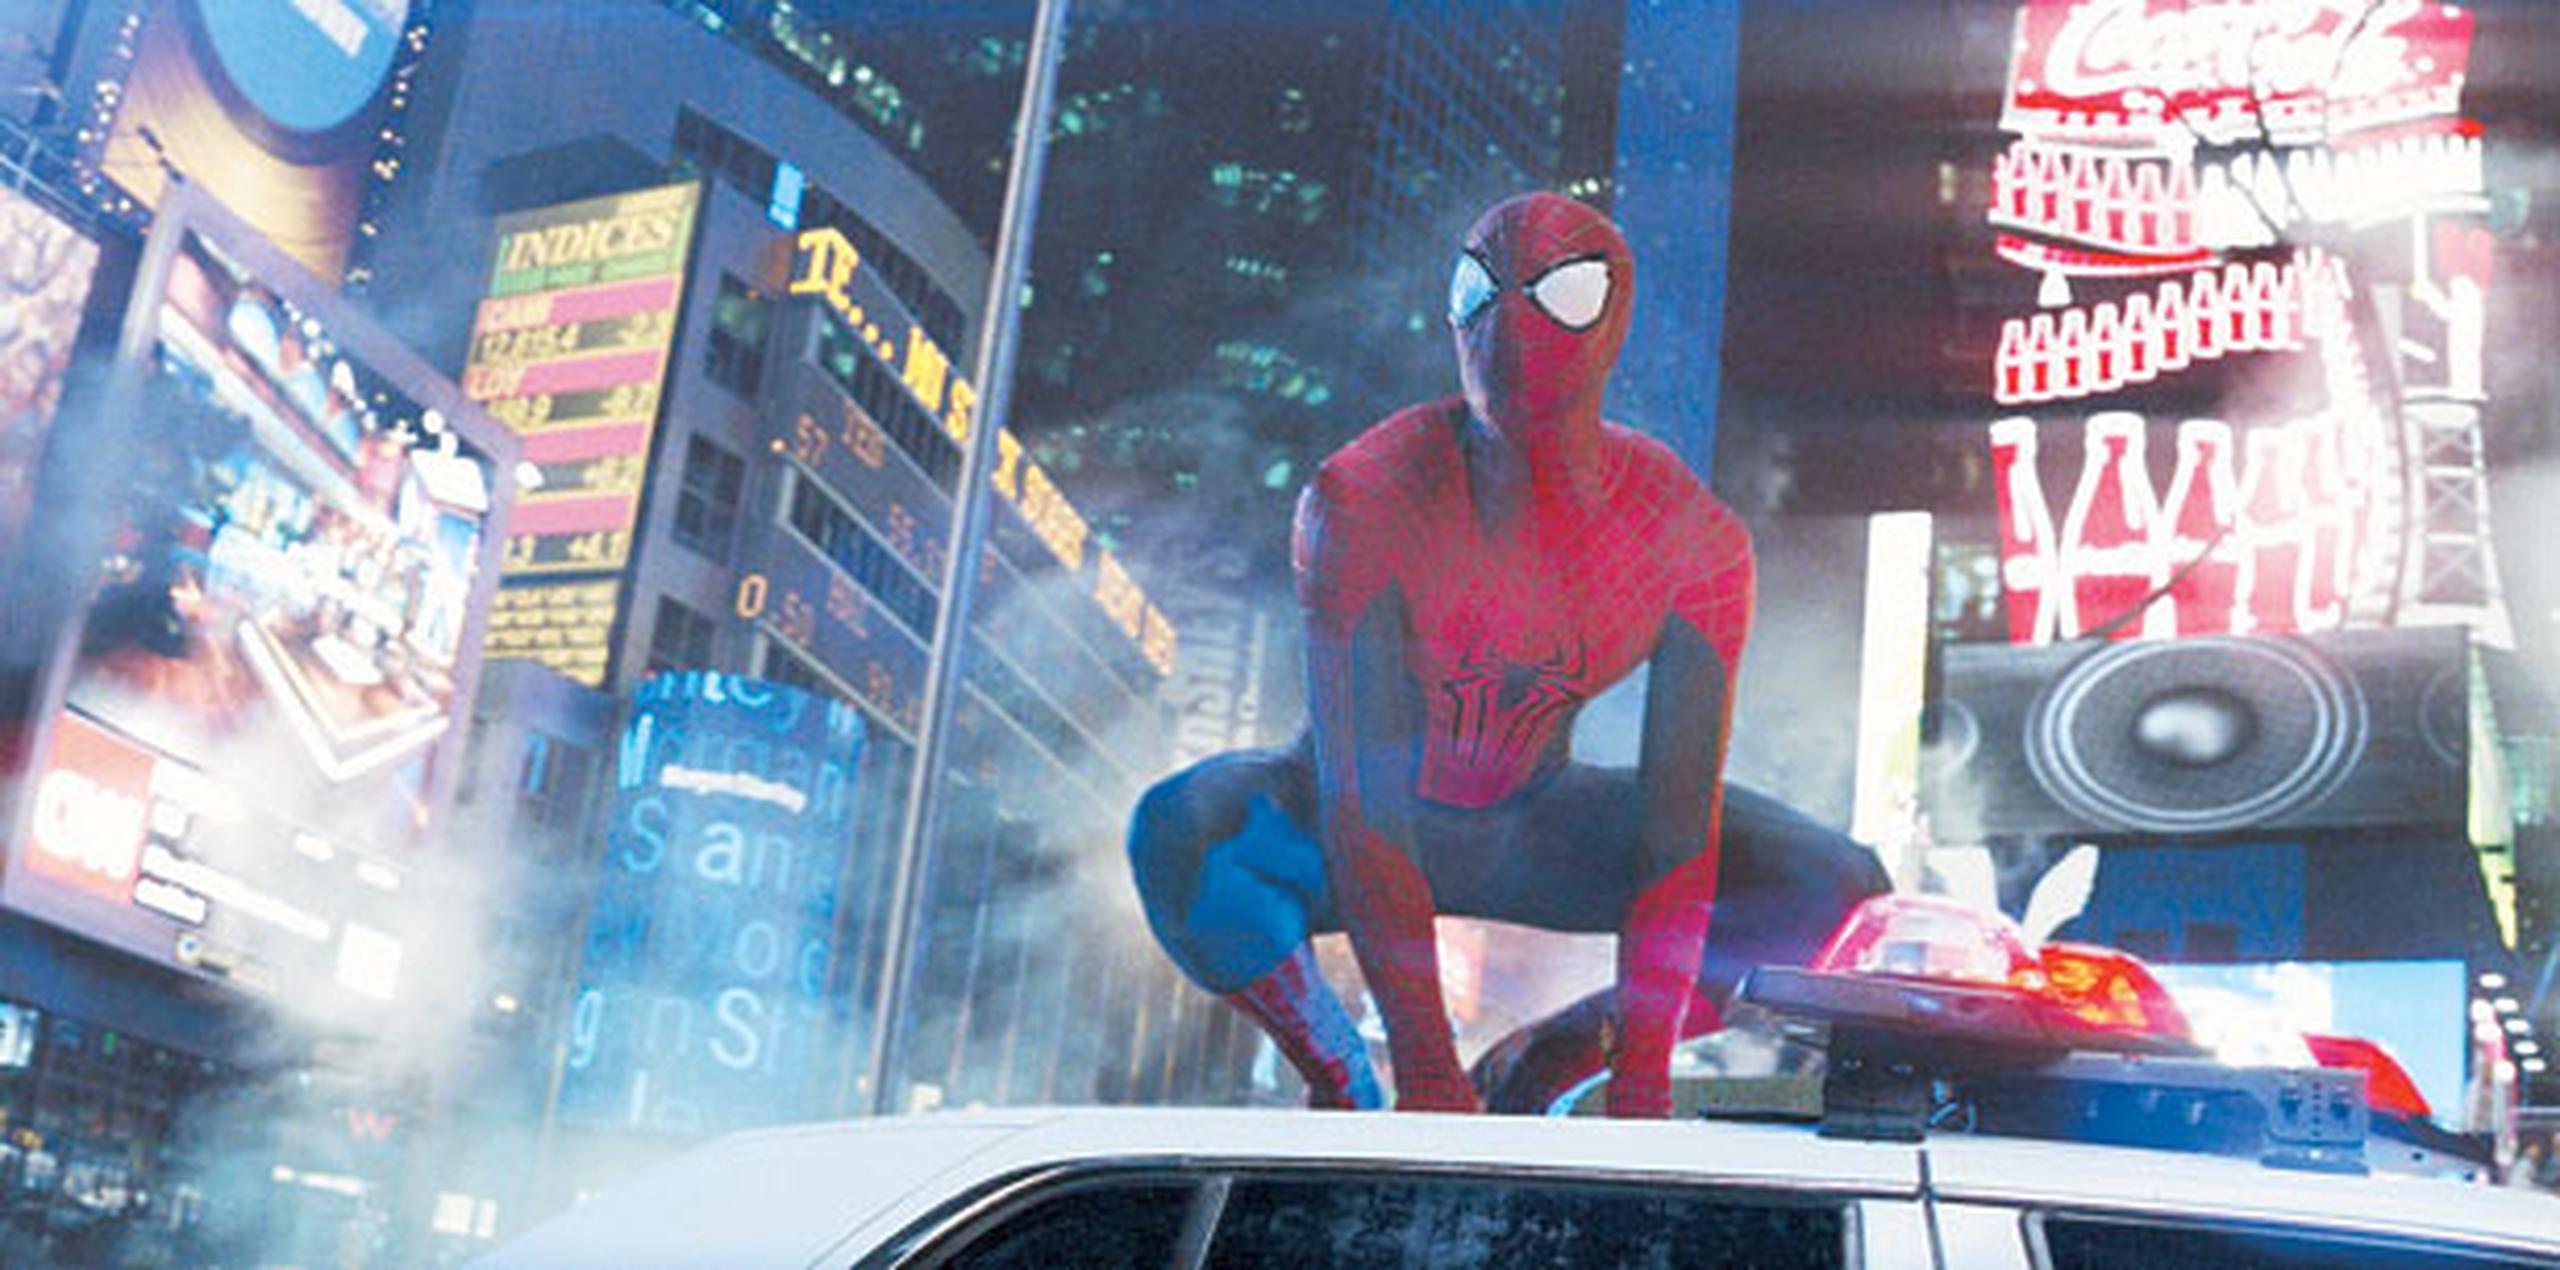 inkner fue uno de los guionistas de "The Amazing Spiderman 2" (2014), el último largometraje, hasta la fecha, sobre el hombre-araña, que fue protagonizado por Andrew Garfield y Emma Stone. (Archivo)